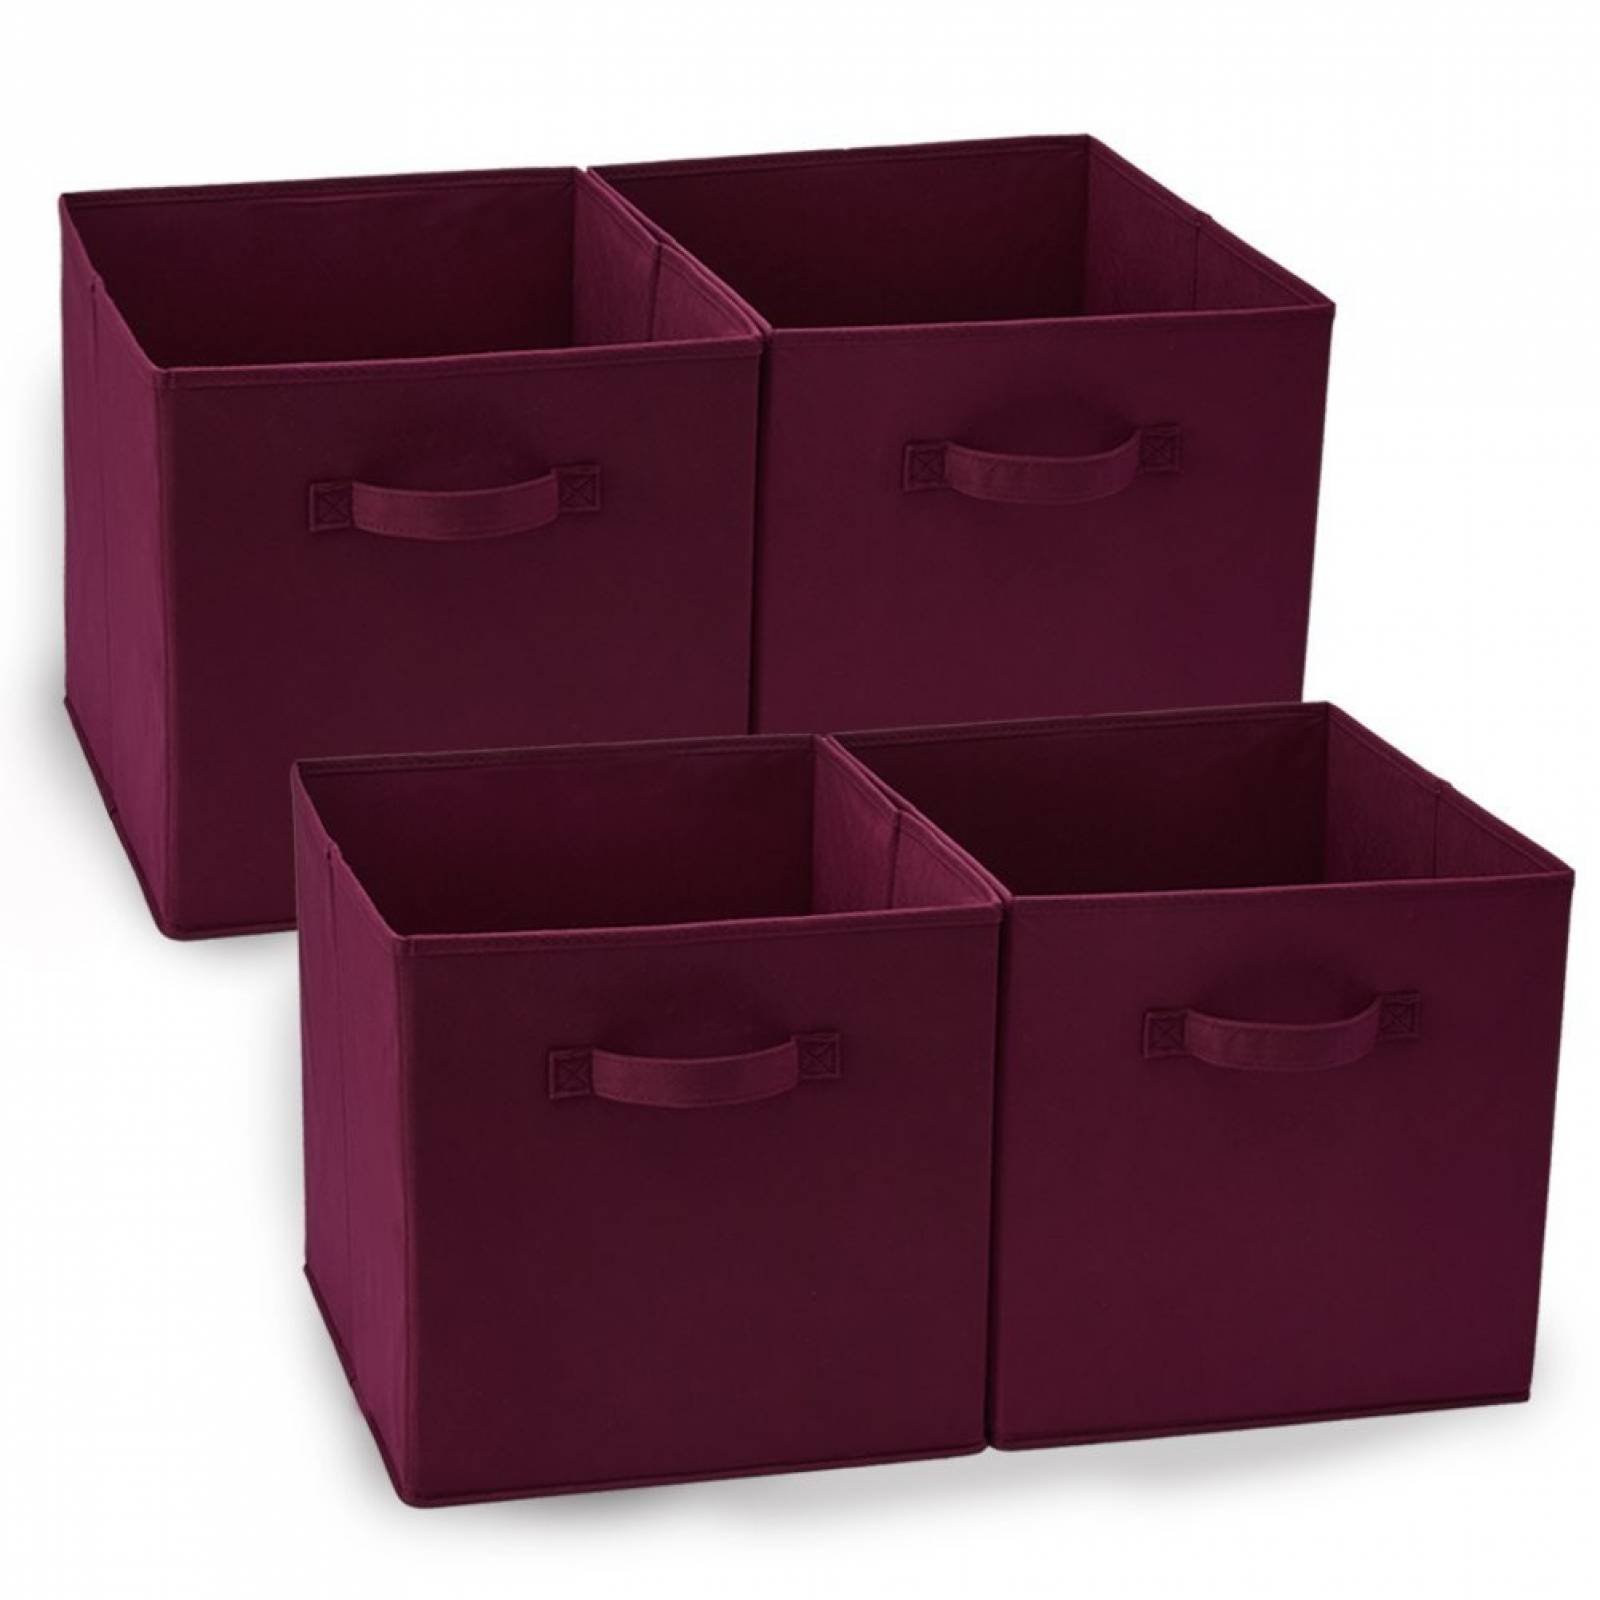 Cajas Organizadoras Ezoware Juego De 4 Medida 33x38cm - Rojo